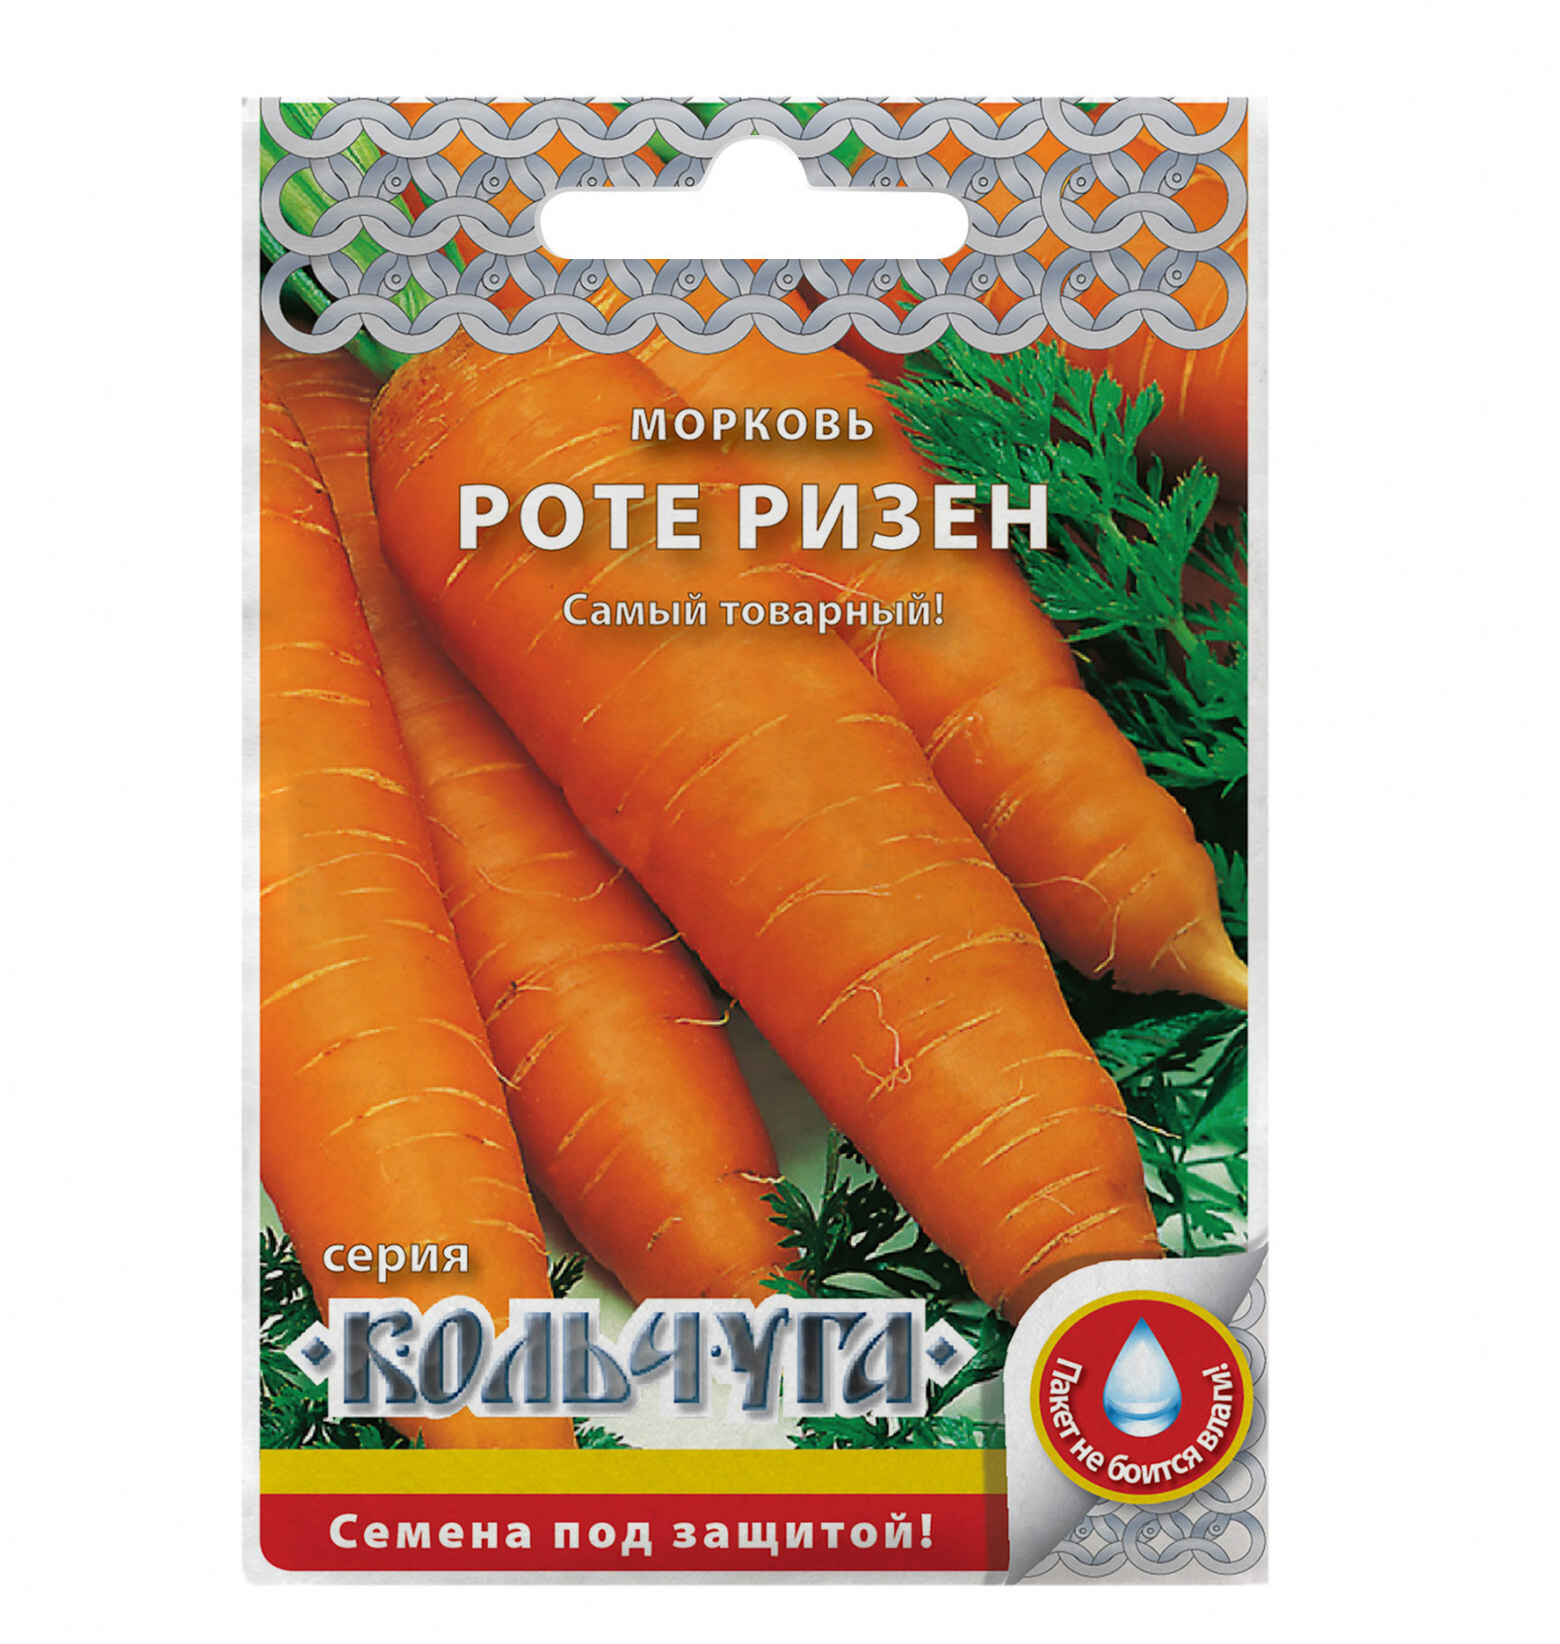 Семена Кольчуга е03007 Морковь Роте ризен